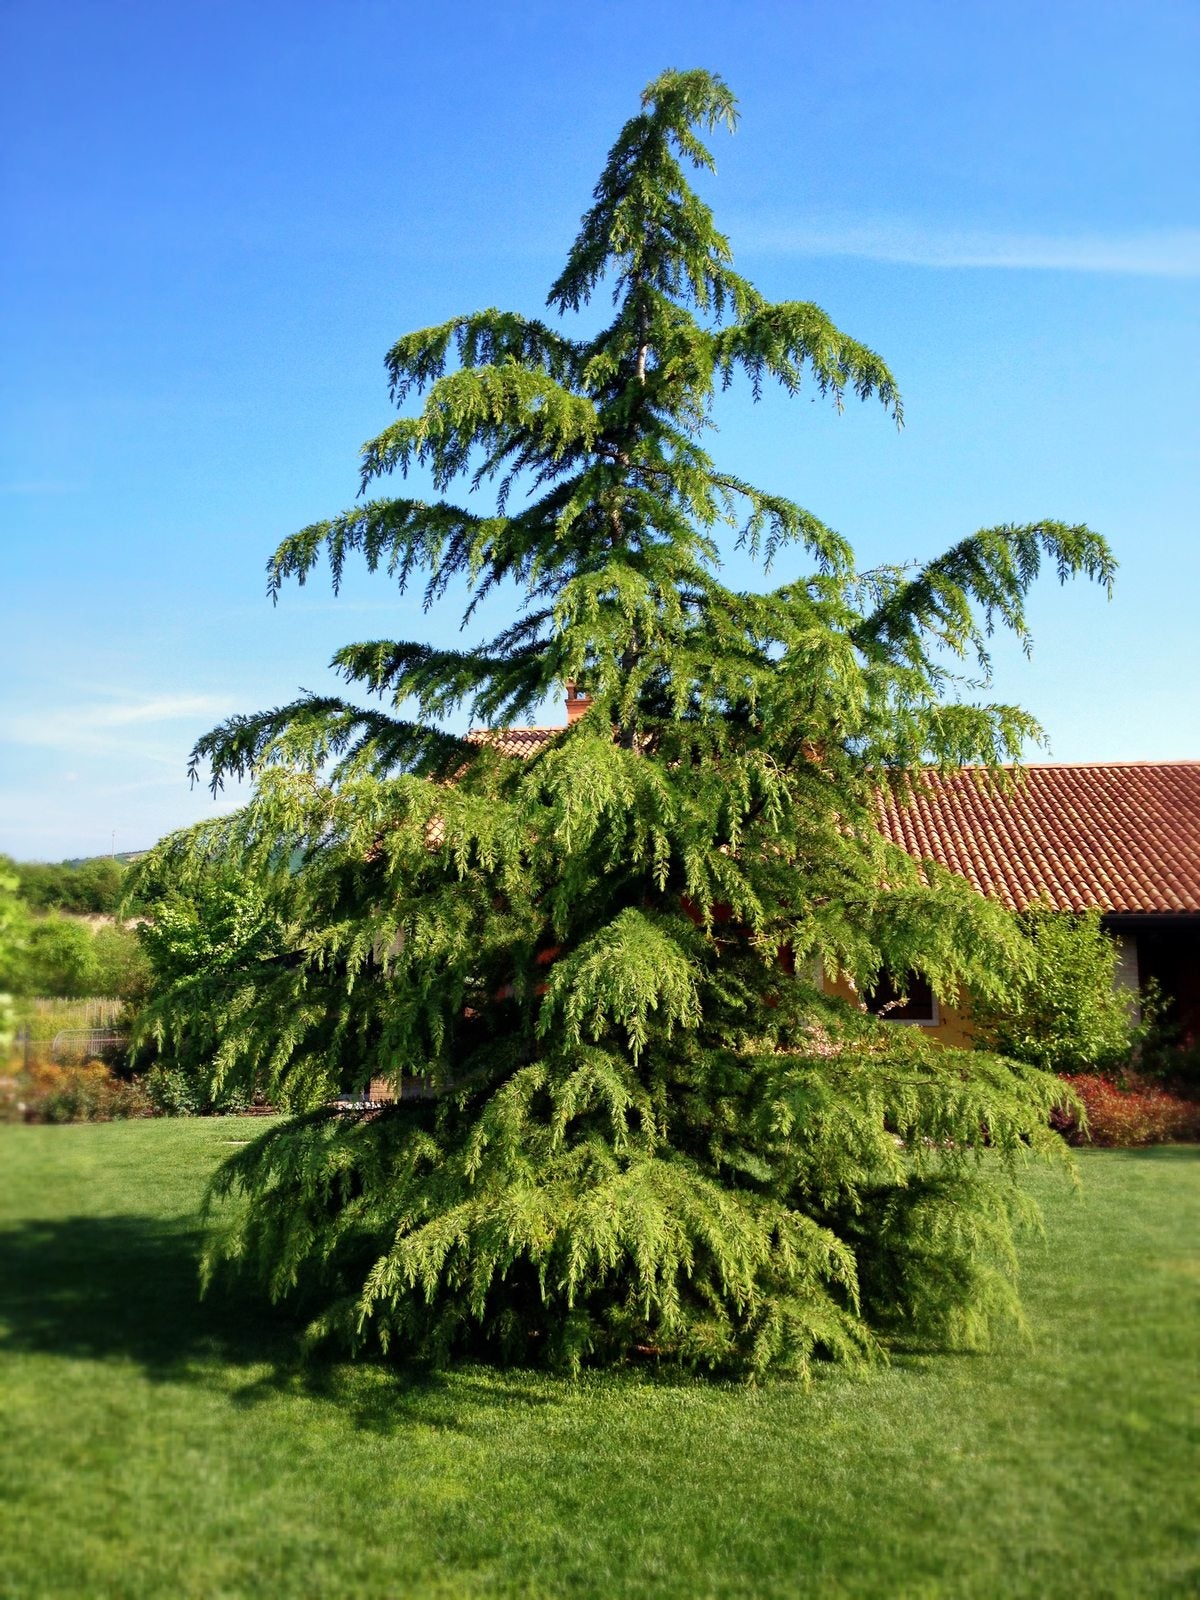 How to Trim Cedar Tree